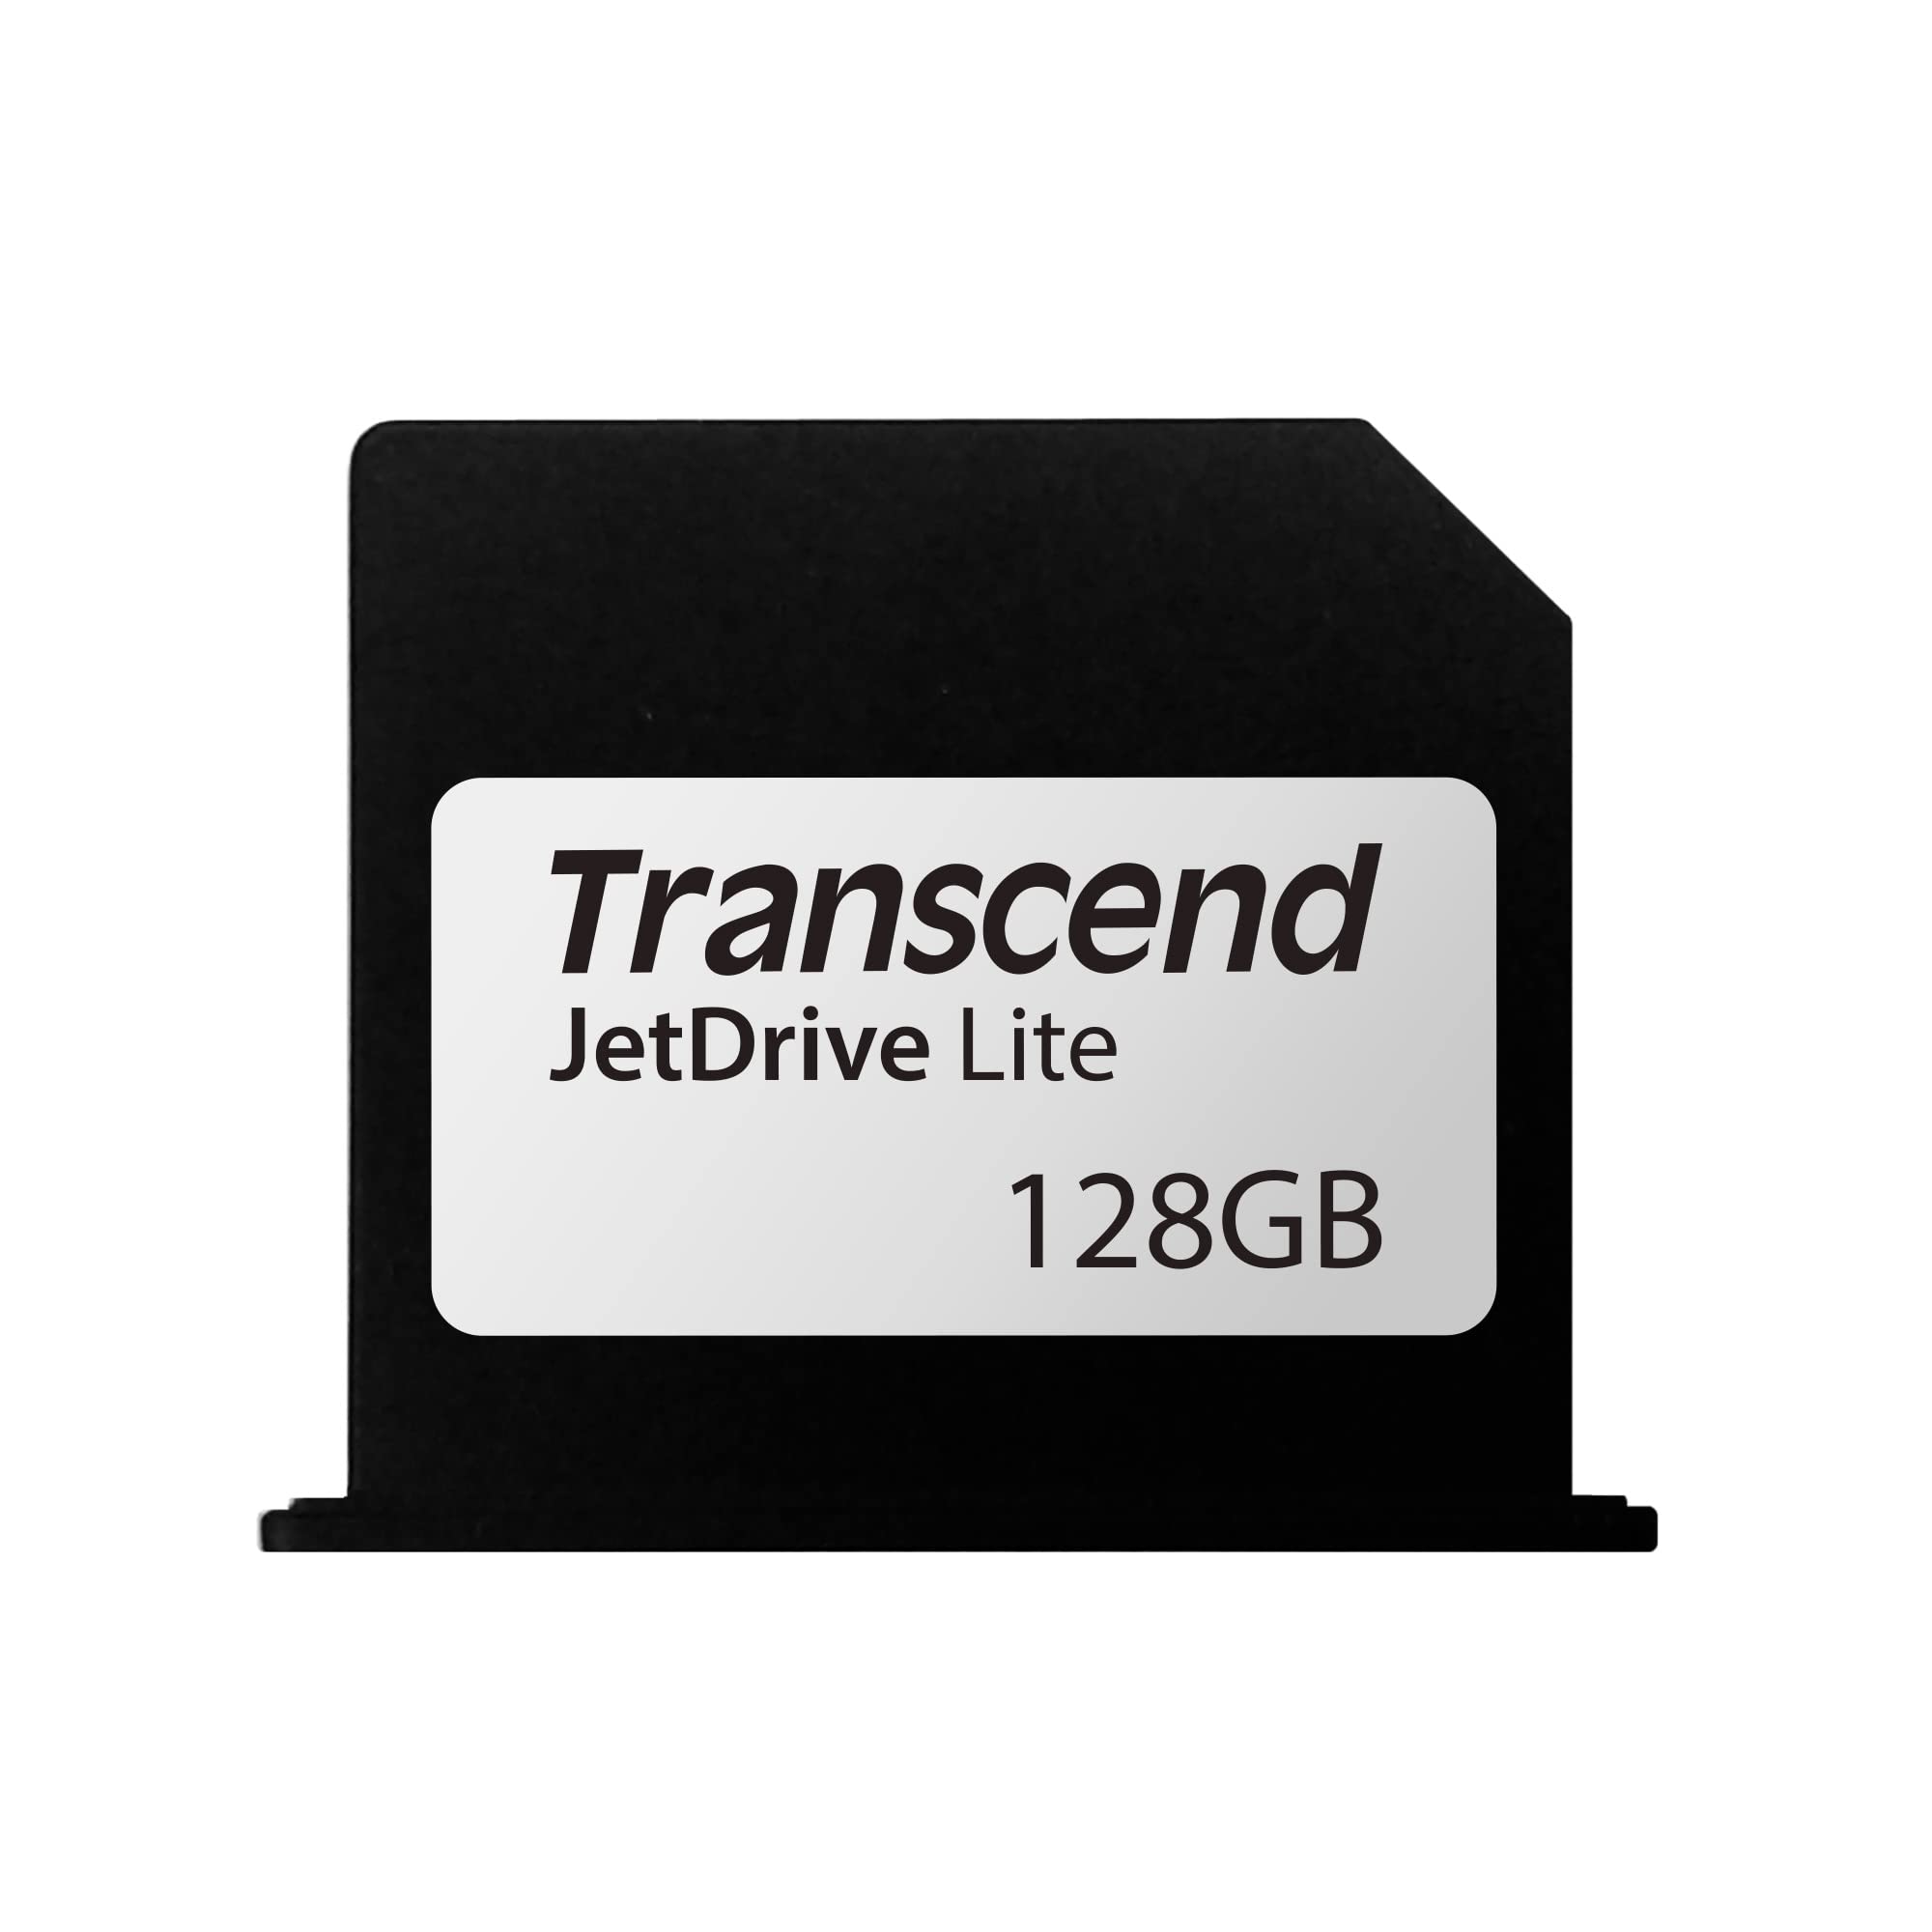 Transcend 128 GB JetDrive Lite extra Speicher-Erweiterungskarte für MacBook Pro (Retina) 15'', angepasst und abschließend mit dem Karten-Slot (Generation Mitte 2012- Anfang 2013), TS128GJDL350